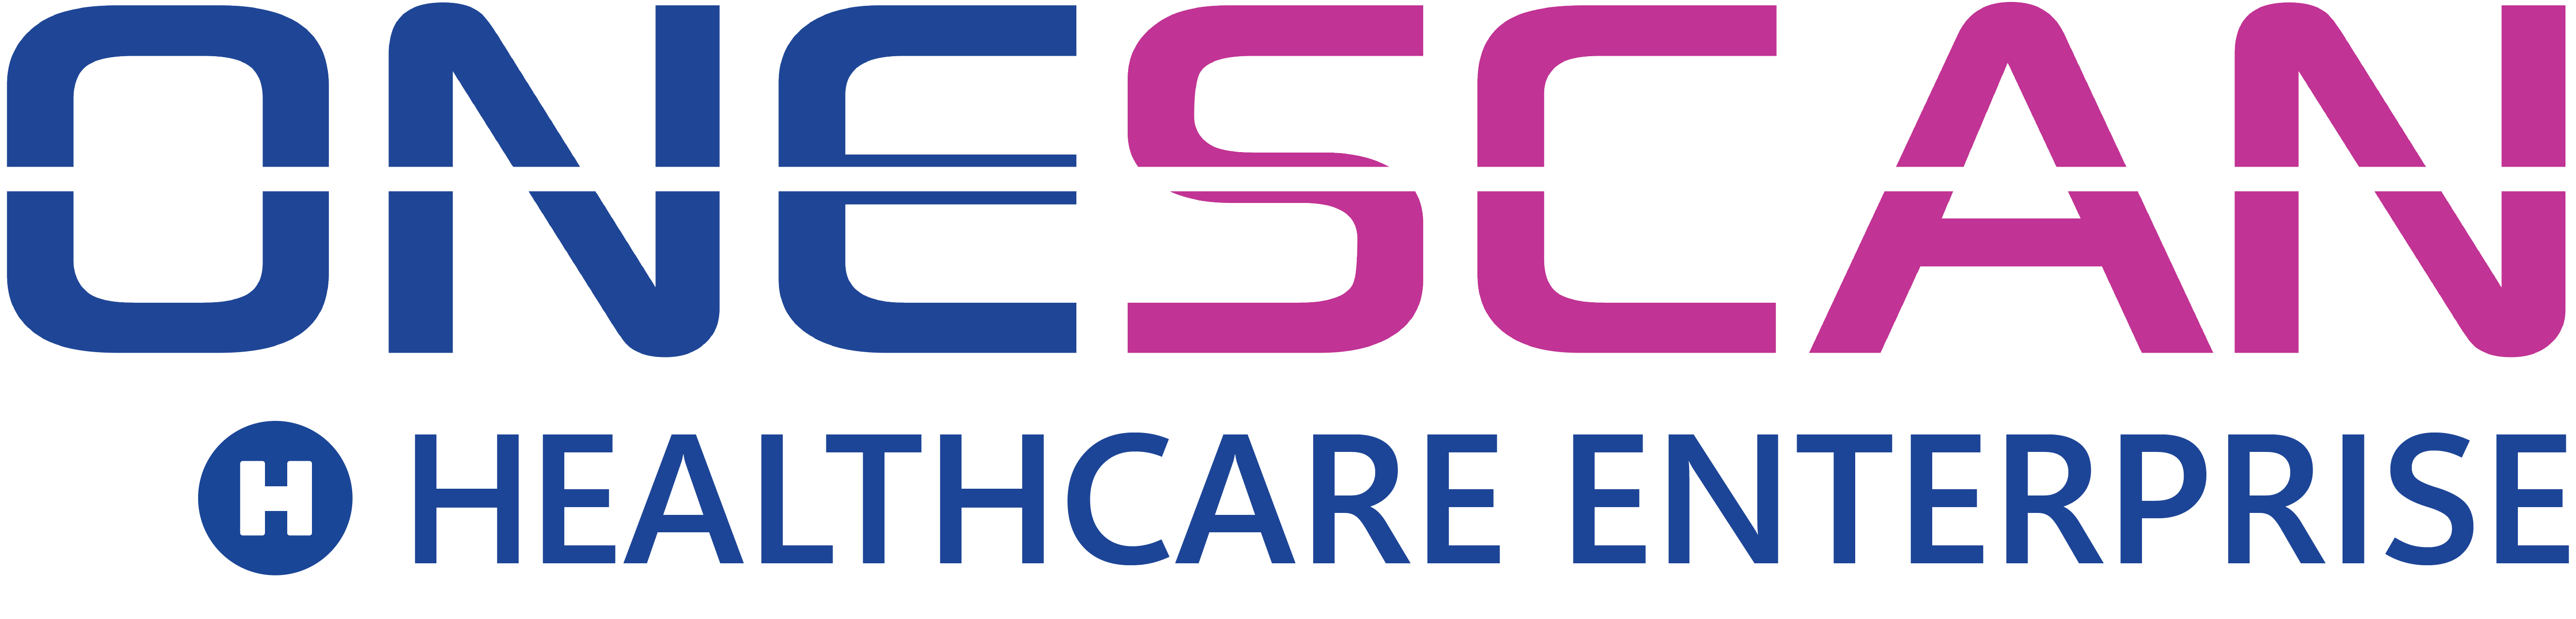 OneScan Healthcare Enterprise